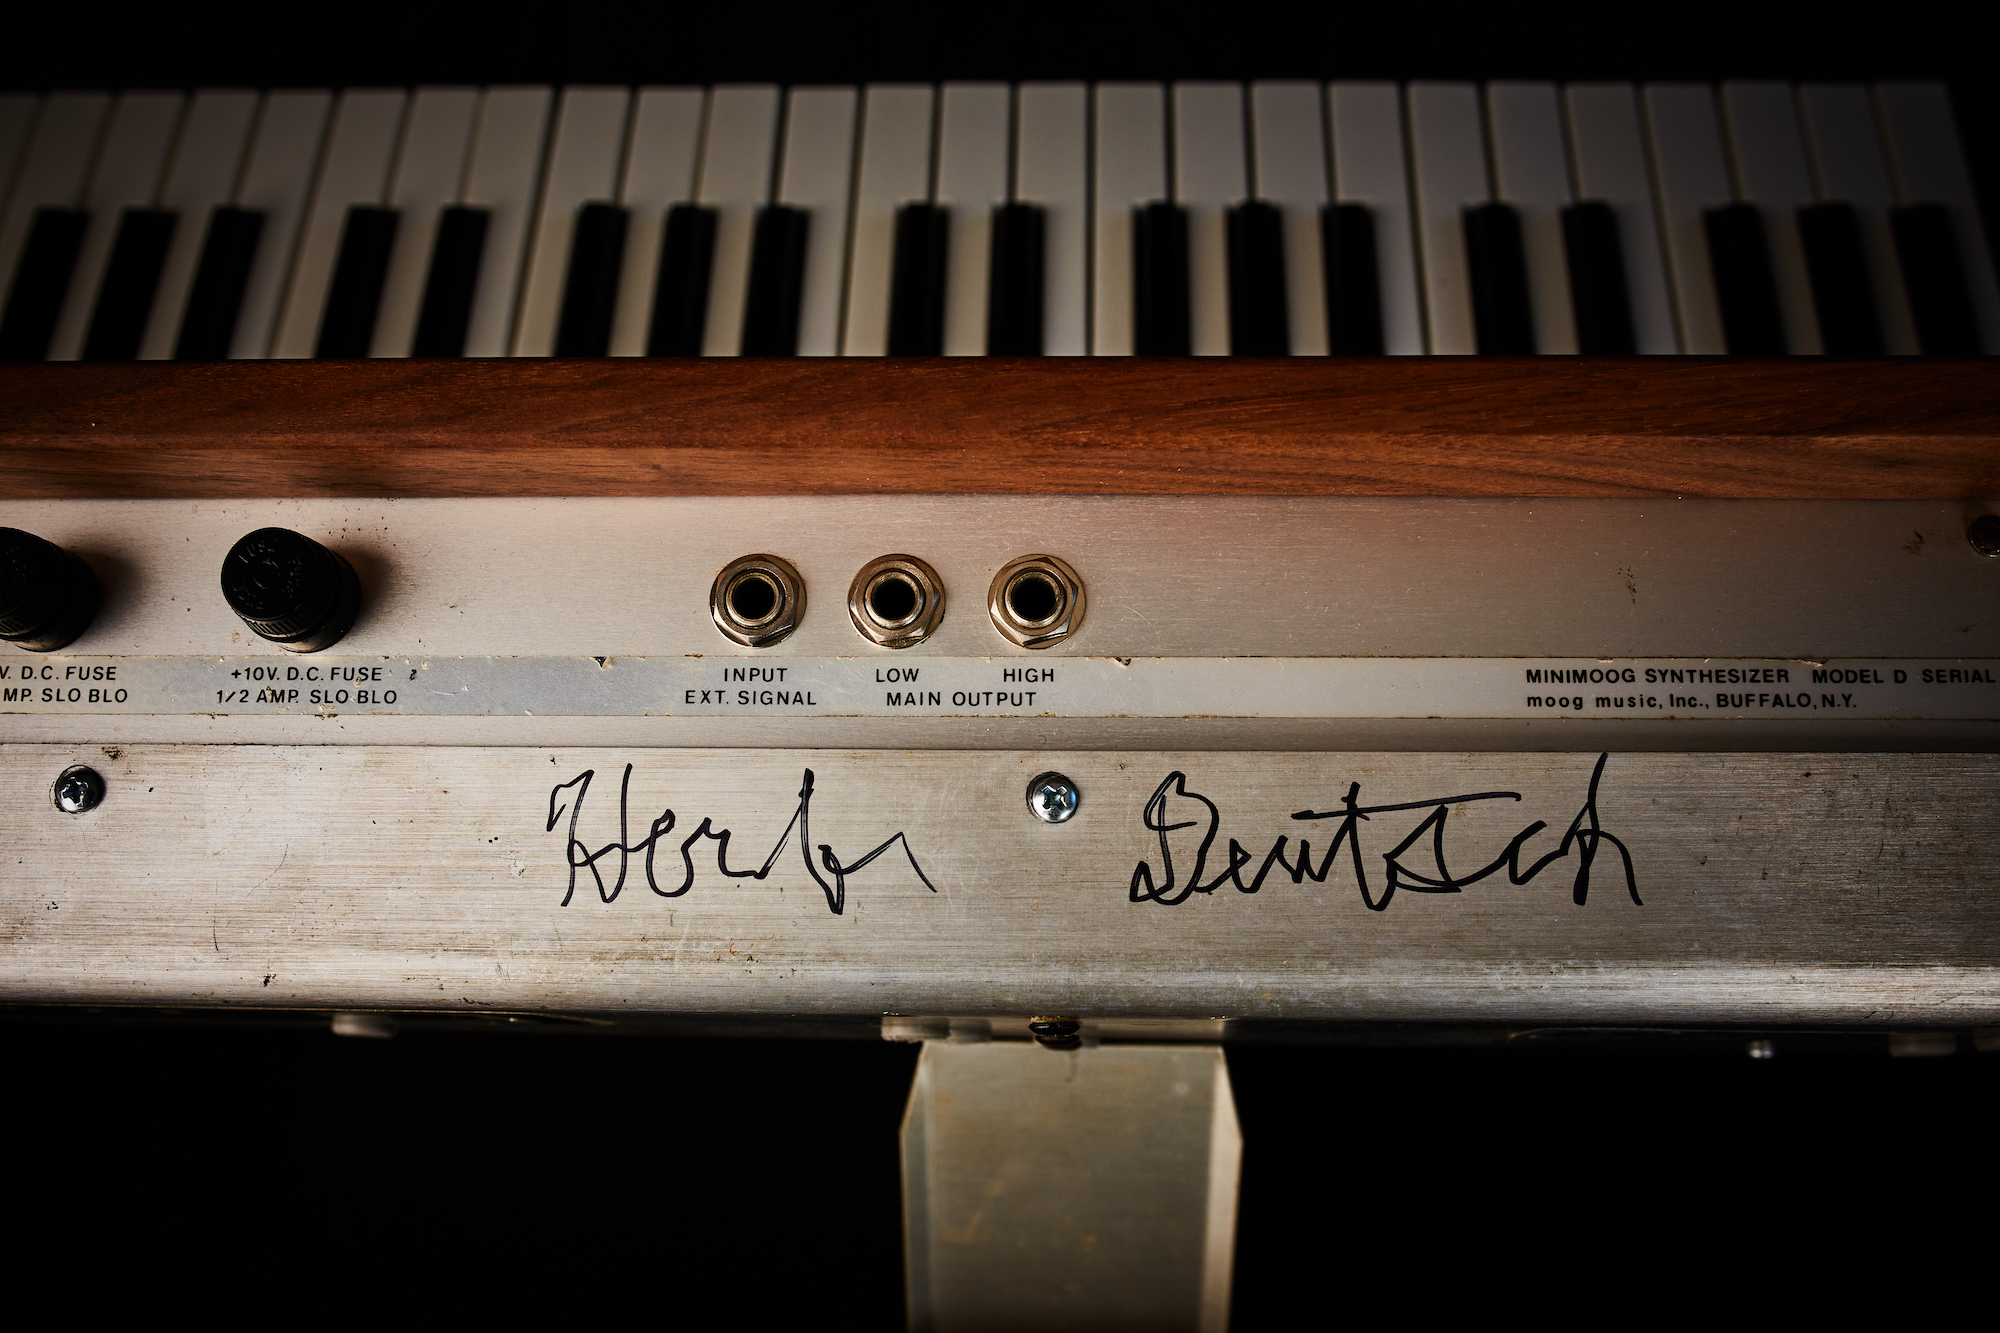 Minimoog signed by Herb Deutsch